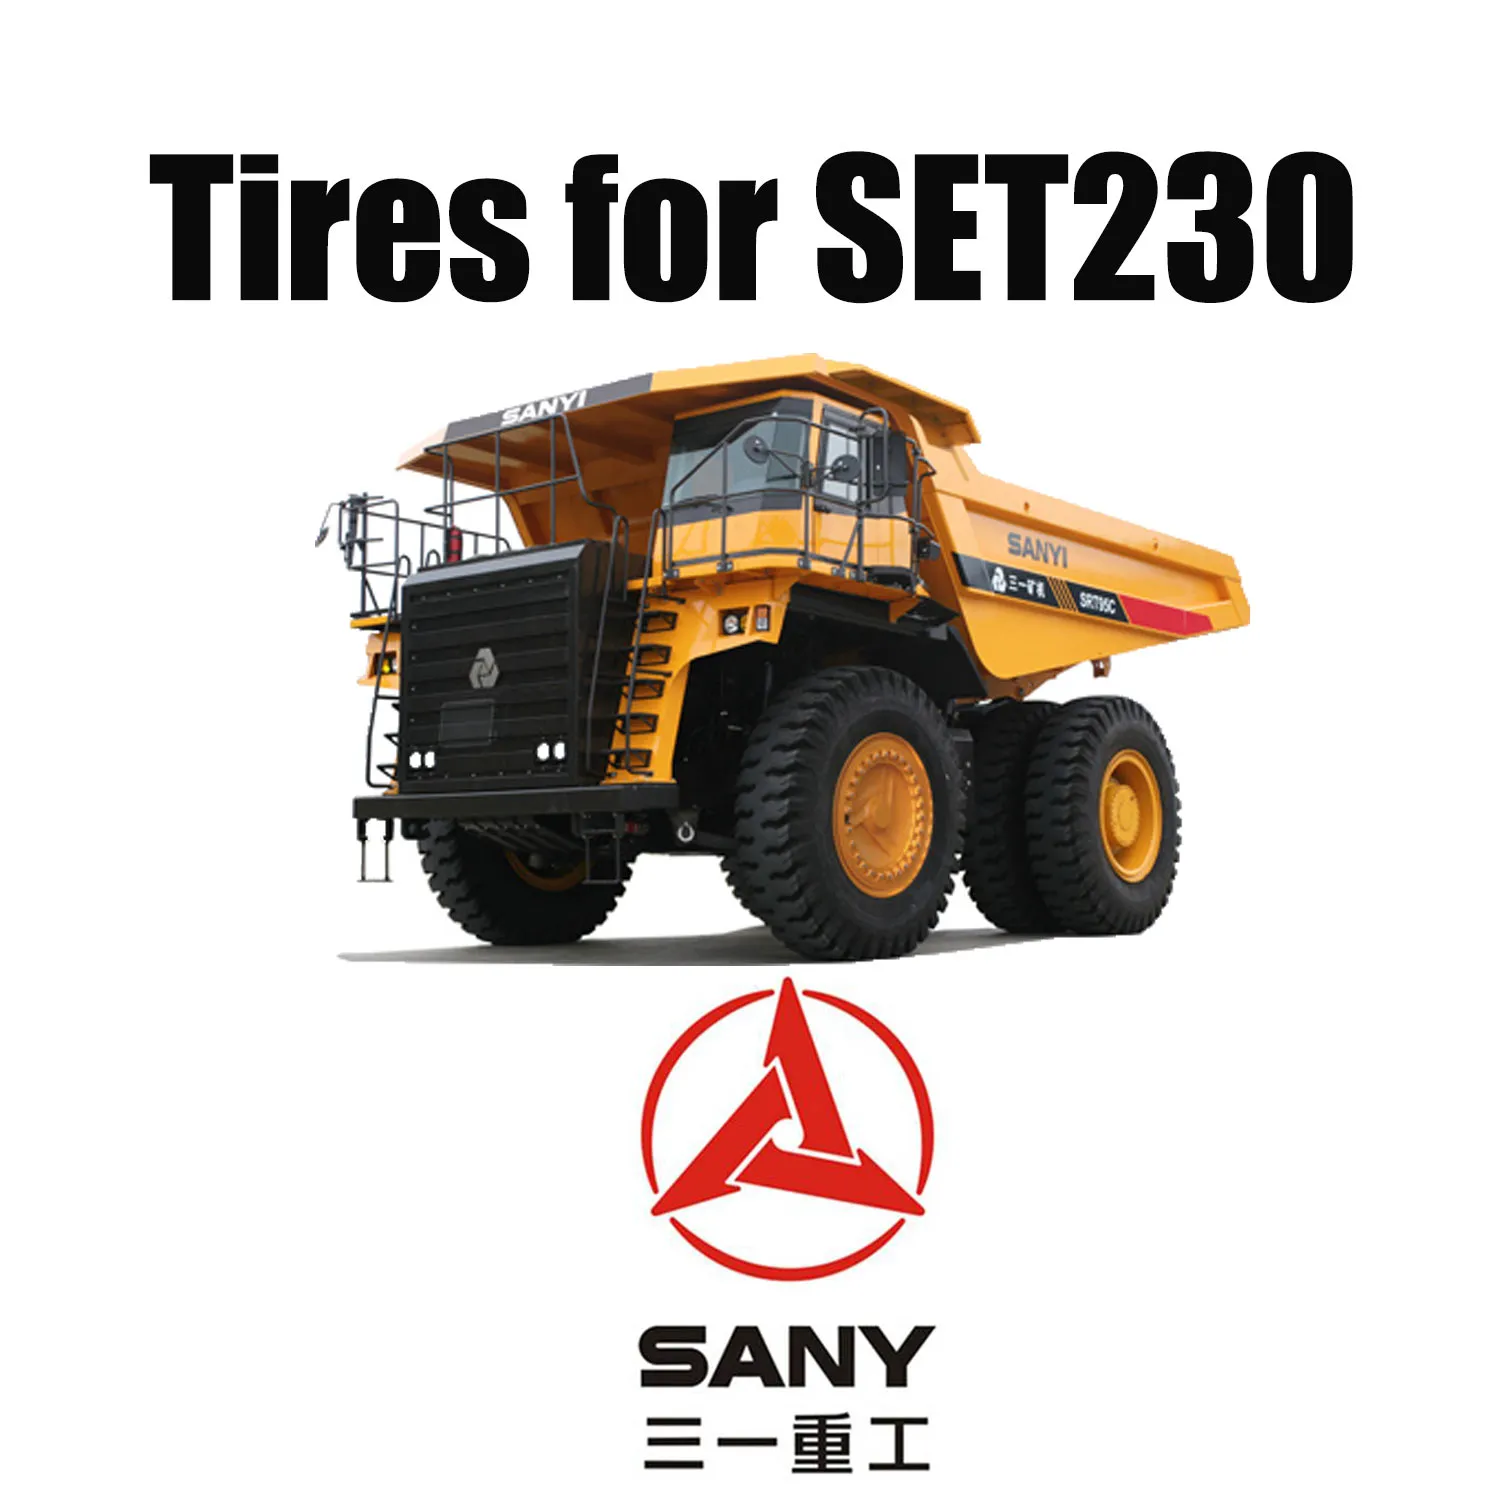 40.00R57 Radiale OTR-banden met uitstekend snijbestendig loopvlak voor mijnbouwtruck SANY SET230